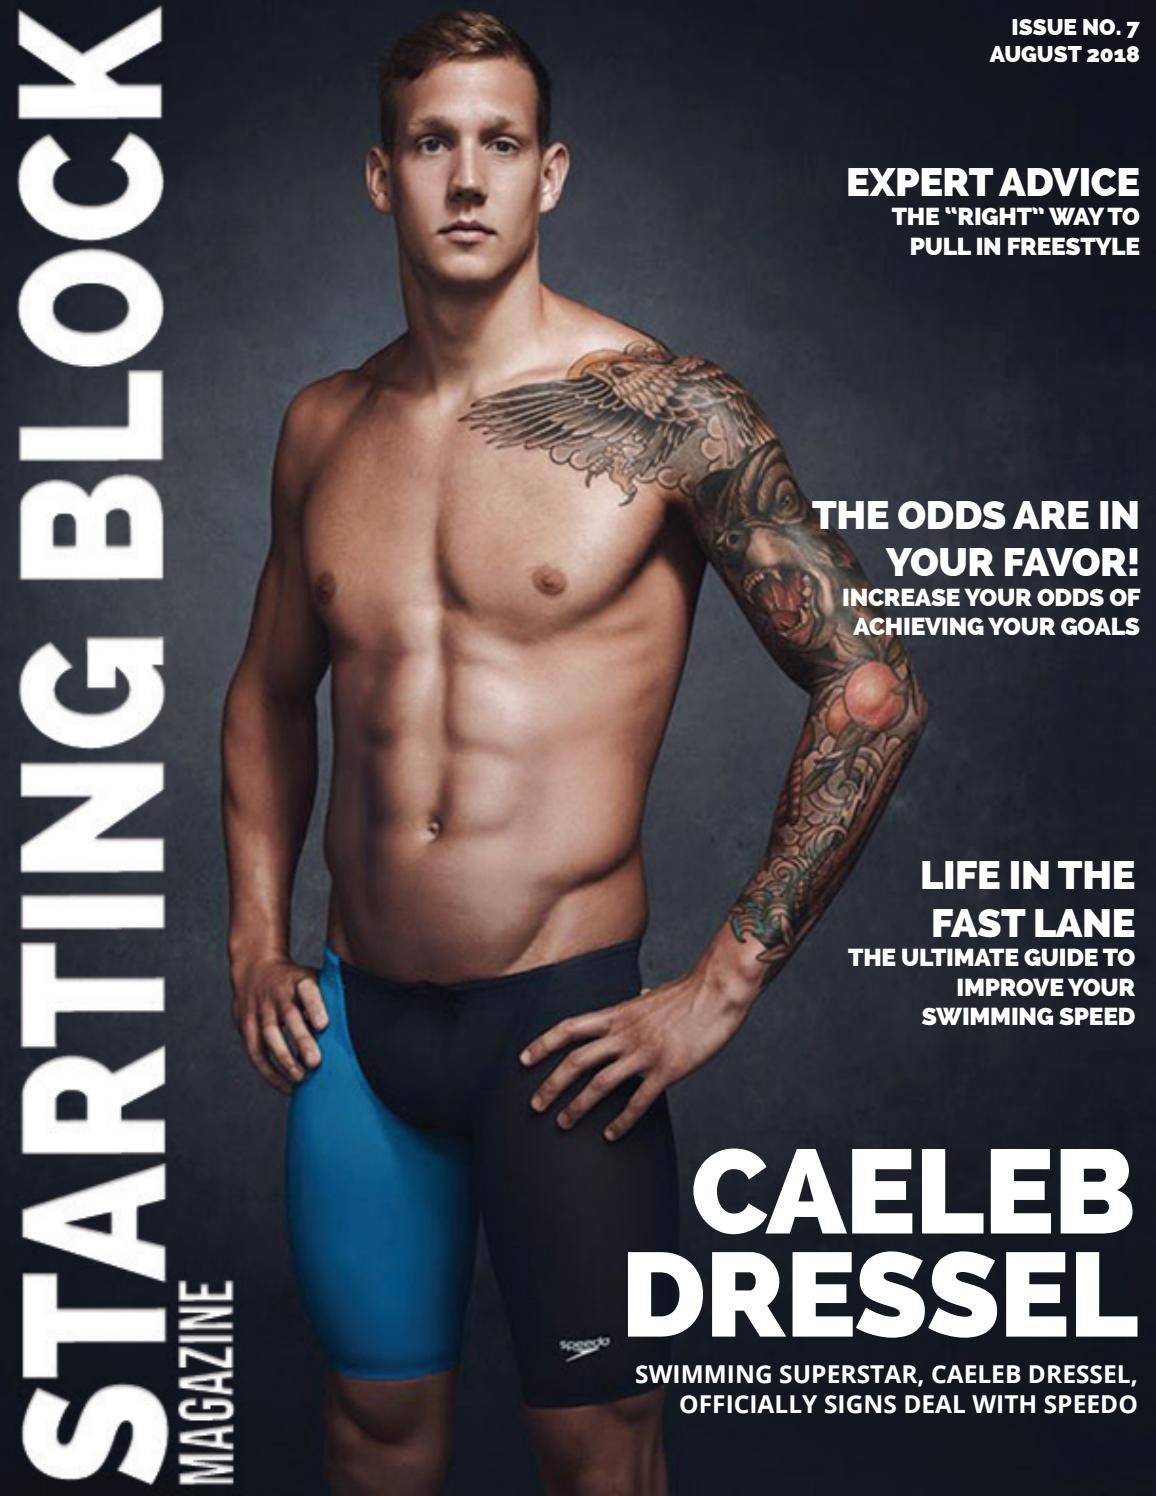 Starting Block Magazine- August 2018. Caeleb dressel, Swimmer, Magazine